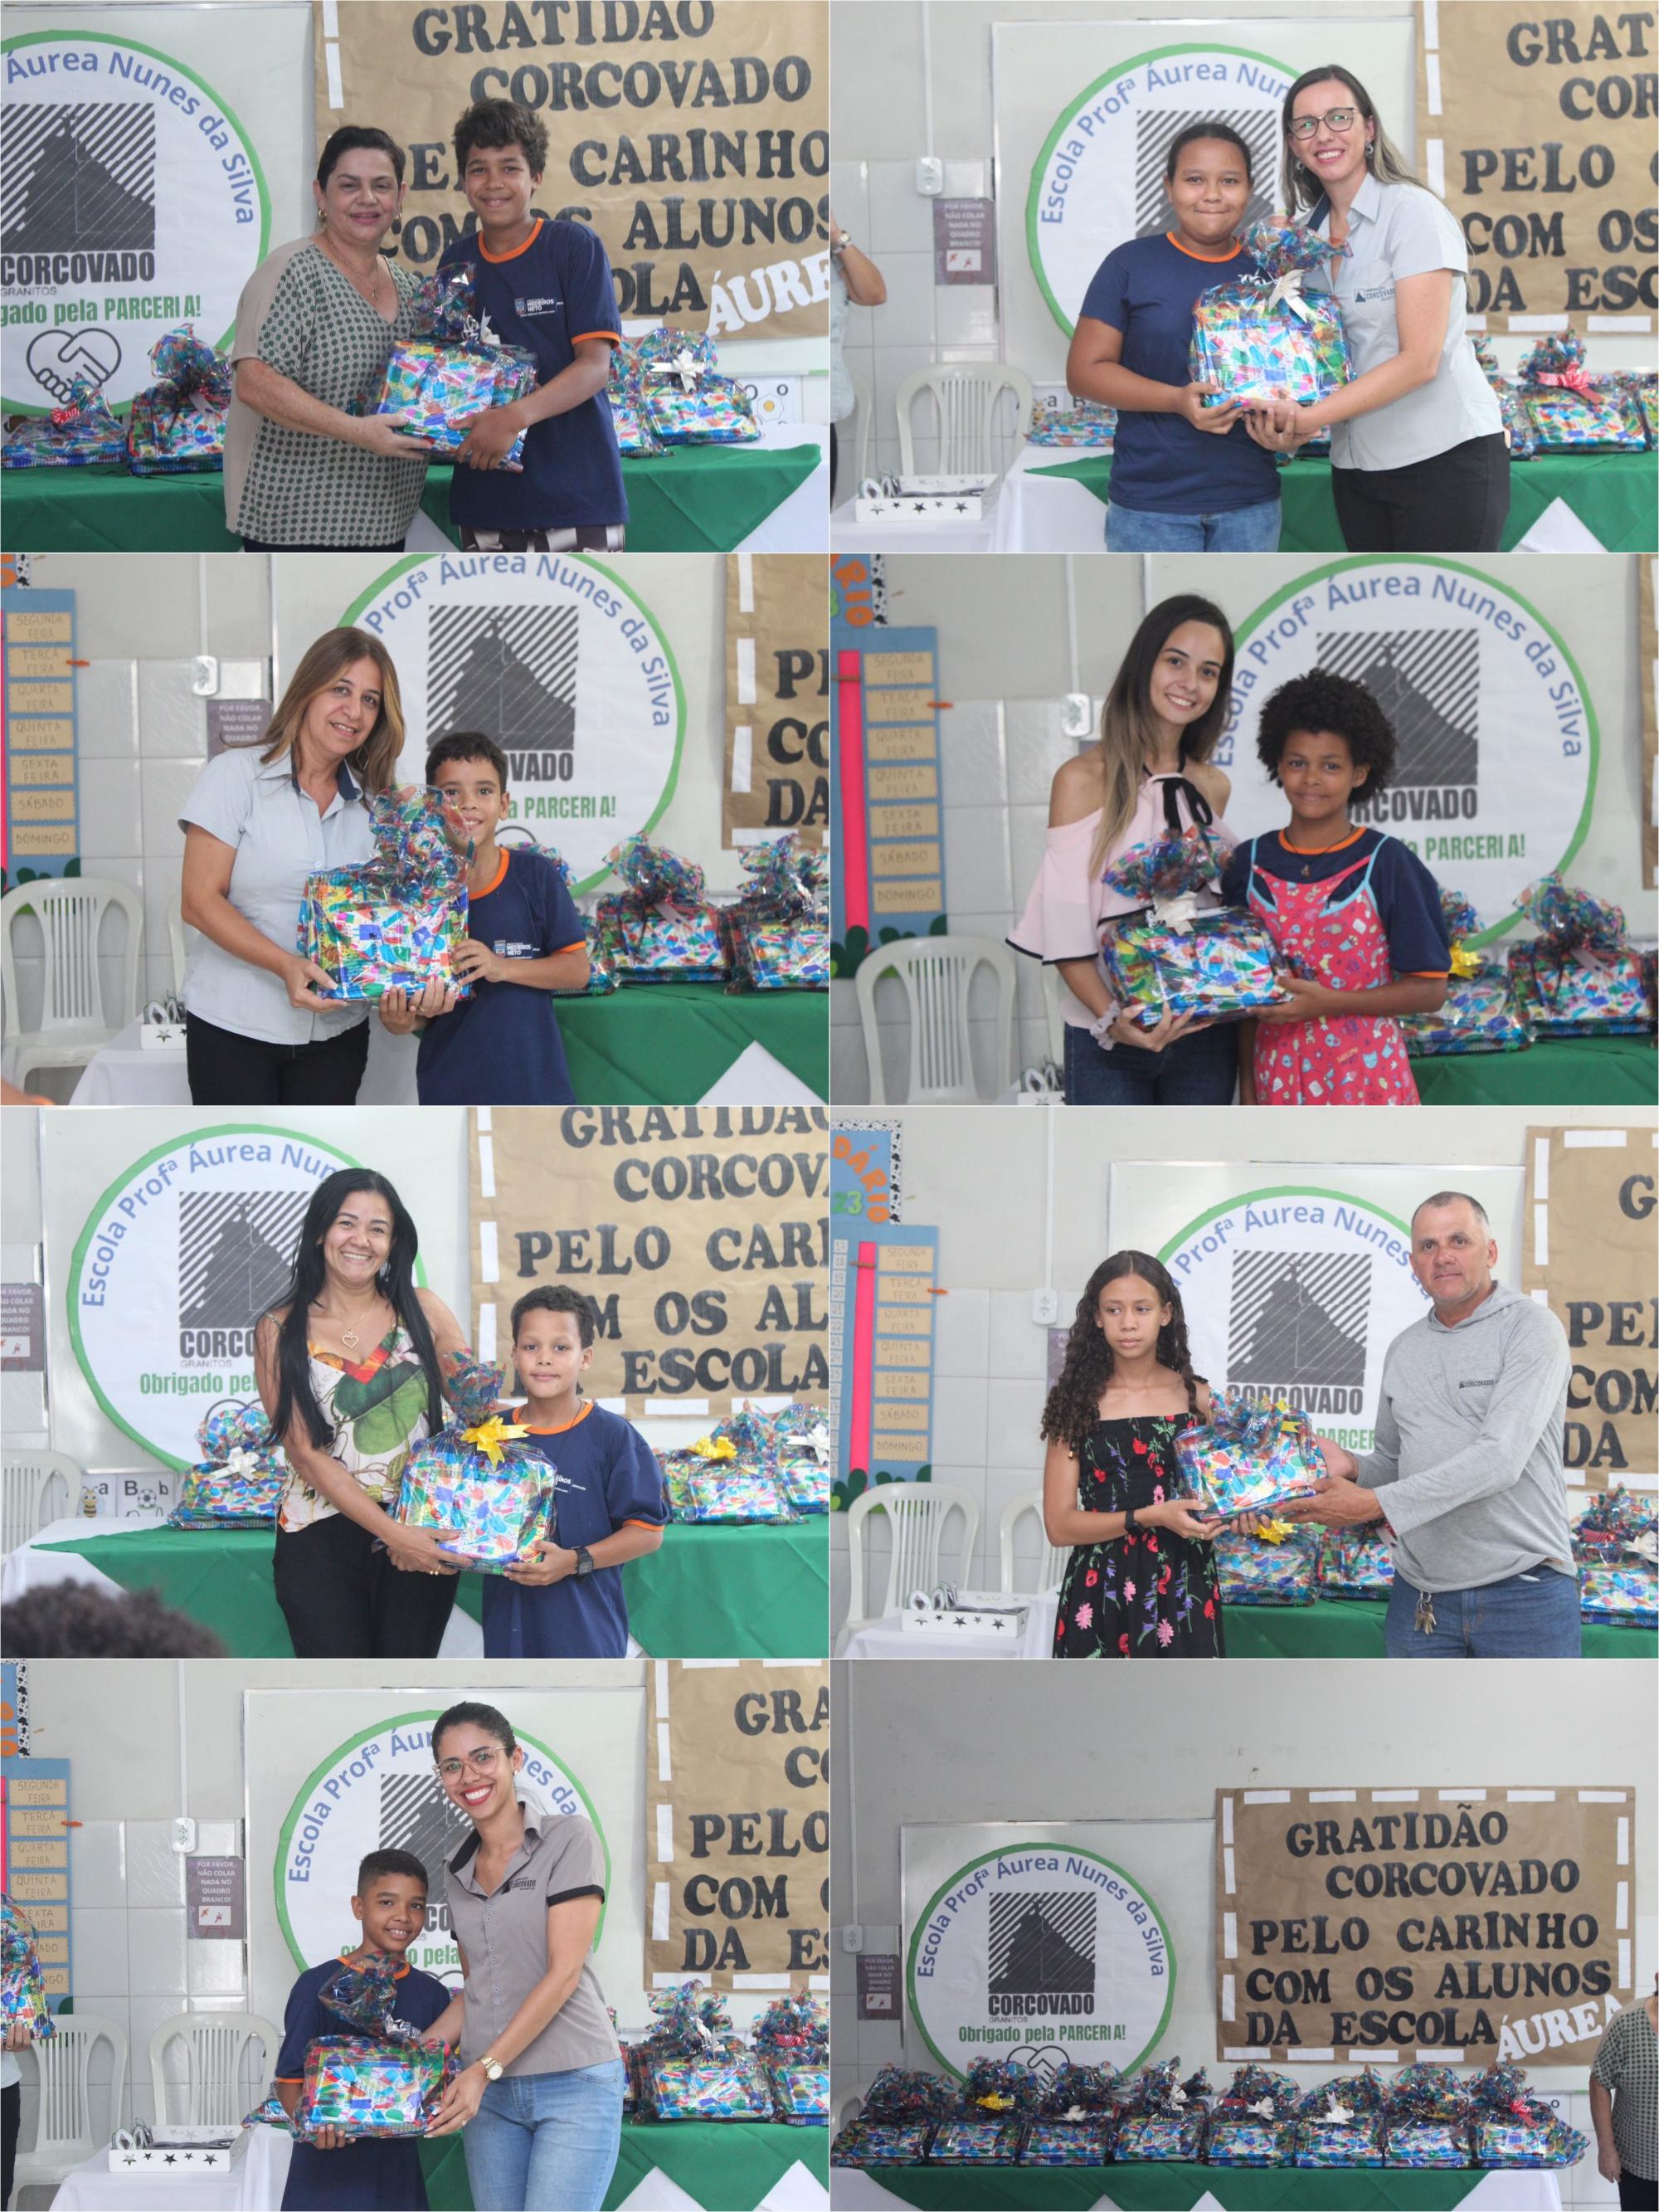 Mineração Corcovado realiza doação de kits de material escolar para a Escola Áurea Nunes, em Medeiros Neto